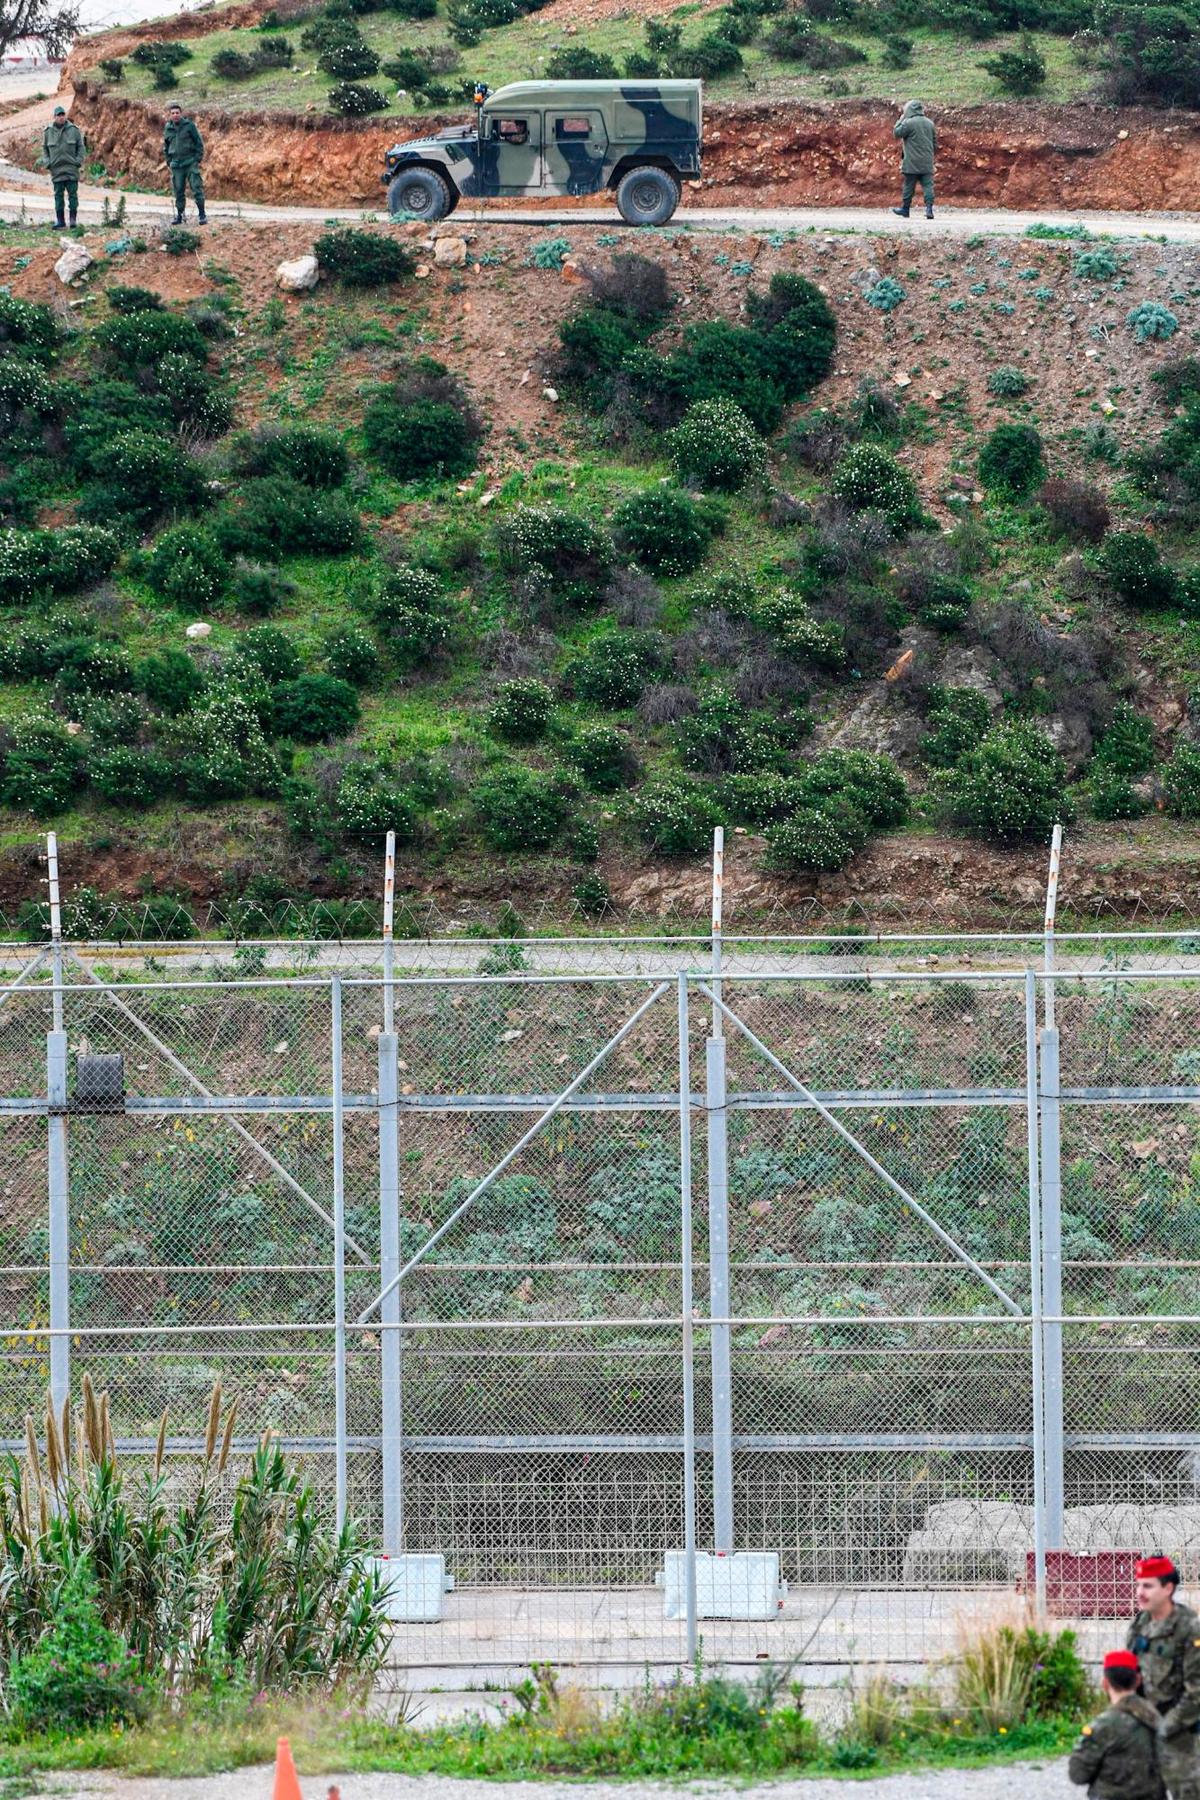 Ejercito patrullando el perímetro fronterizo de España con Marruecos en la frontera de Ceuta.